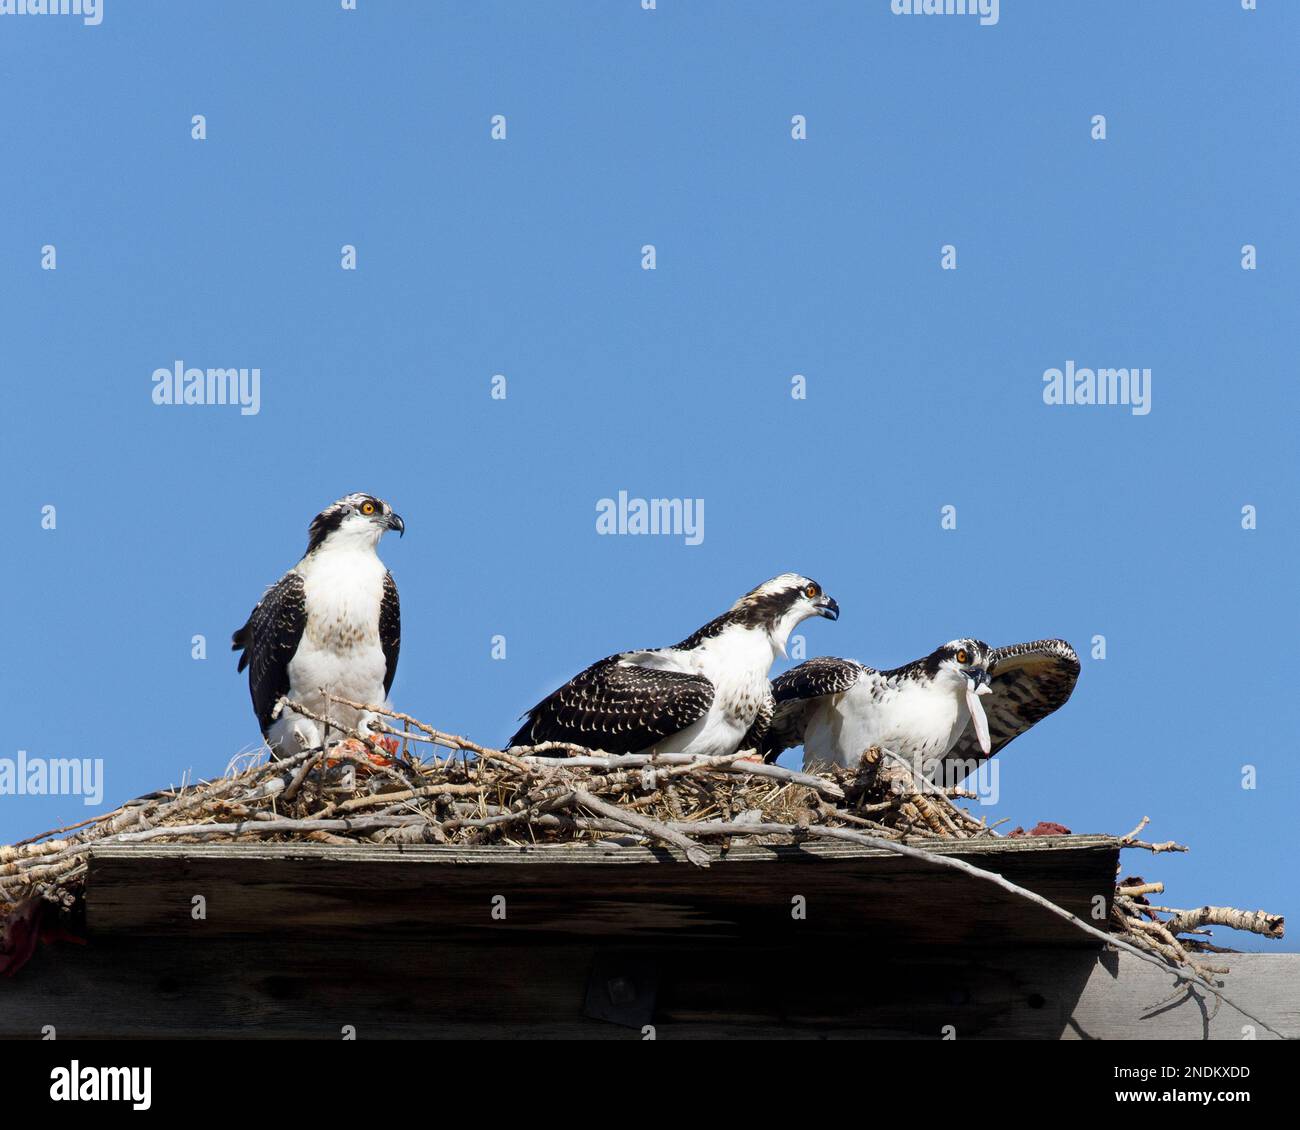 Trois jeunes ospreys perchent sur une plate-forme de nid dans la ville, l'un mangeant un morceau de poisson comme les oiseaux frères et sœurs regardent, Canada. Pandion haliatus Banque D'Images